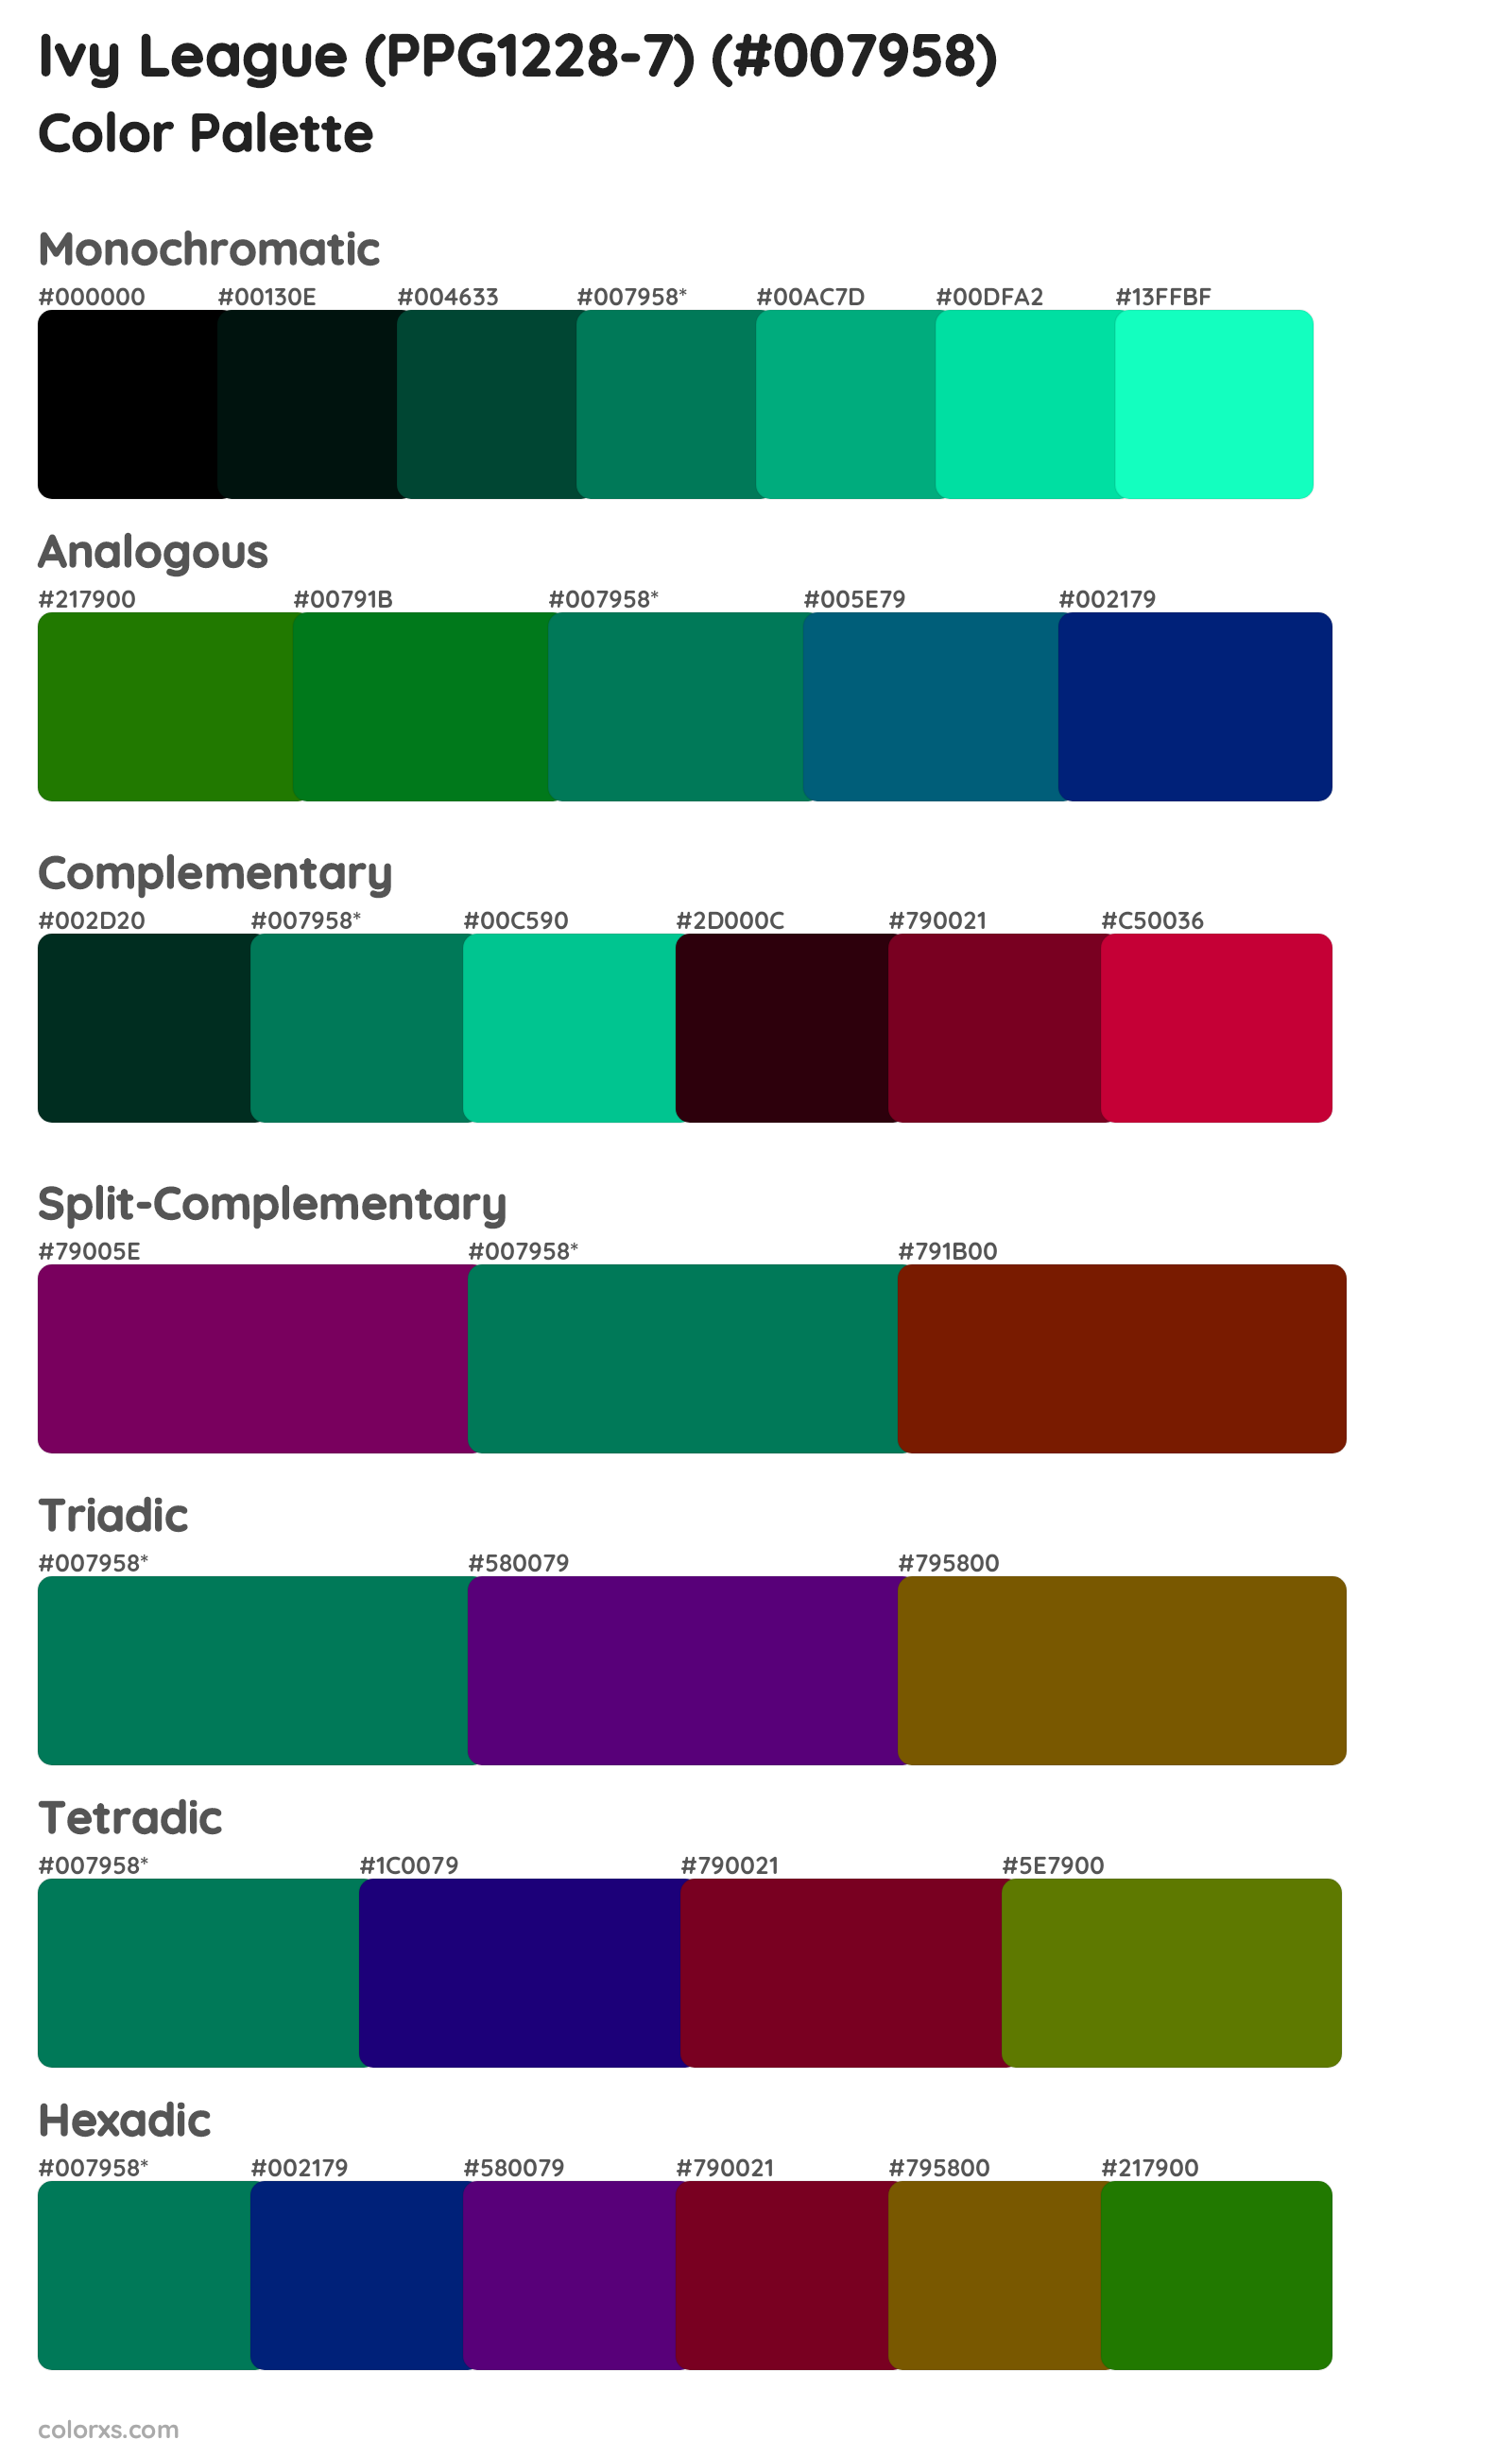 Ivy League (PPG1228-7) Color Scheme Palettes